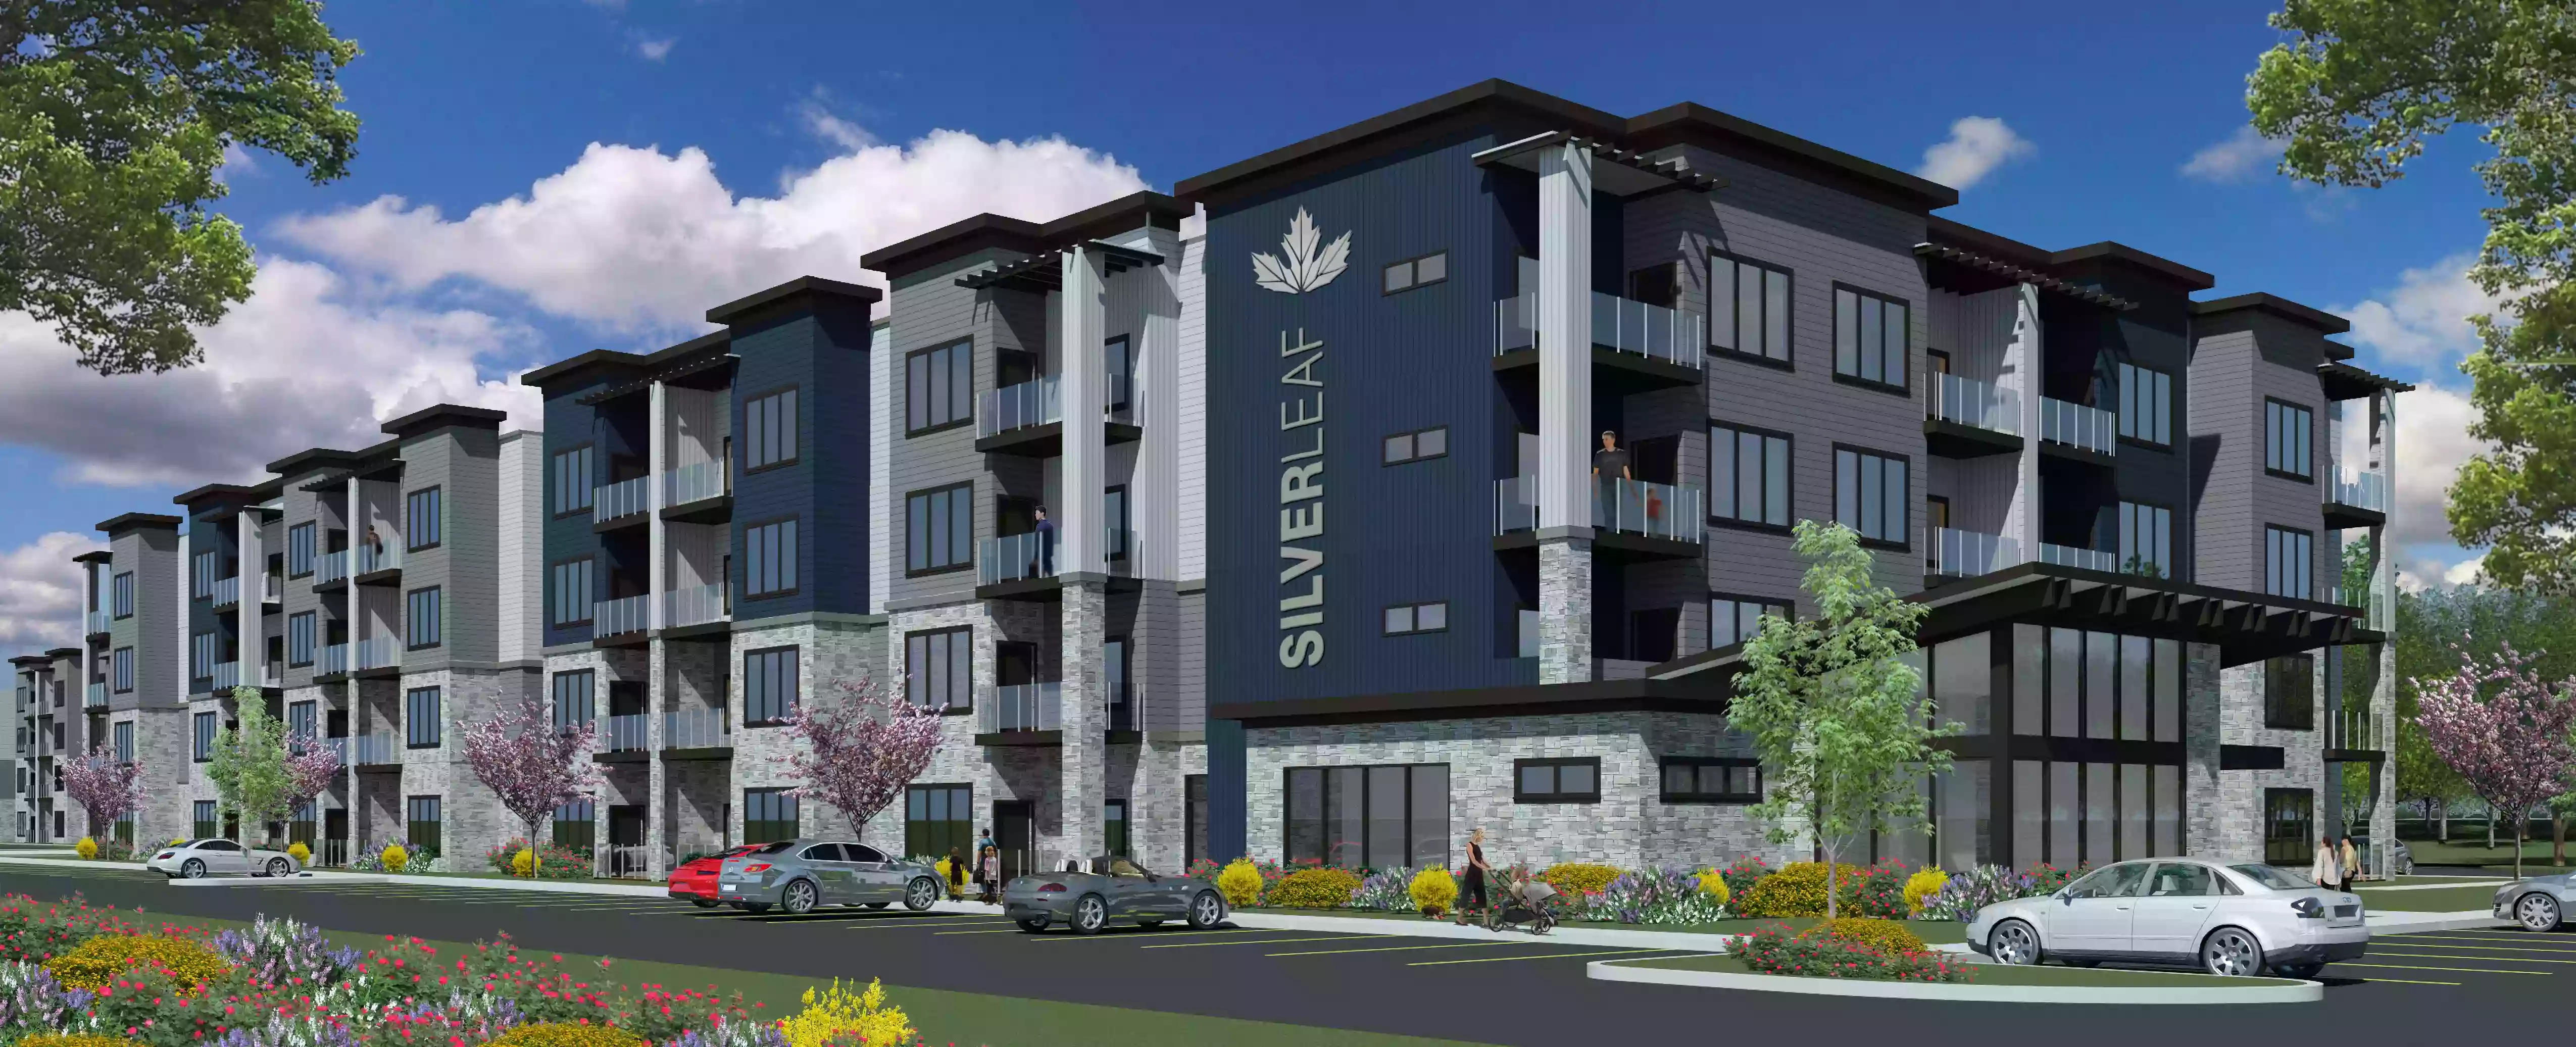 Silverleaf Apartments